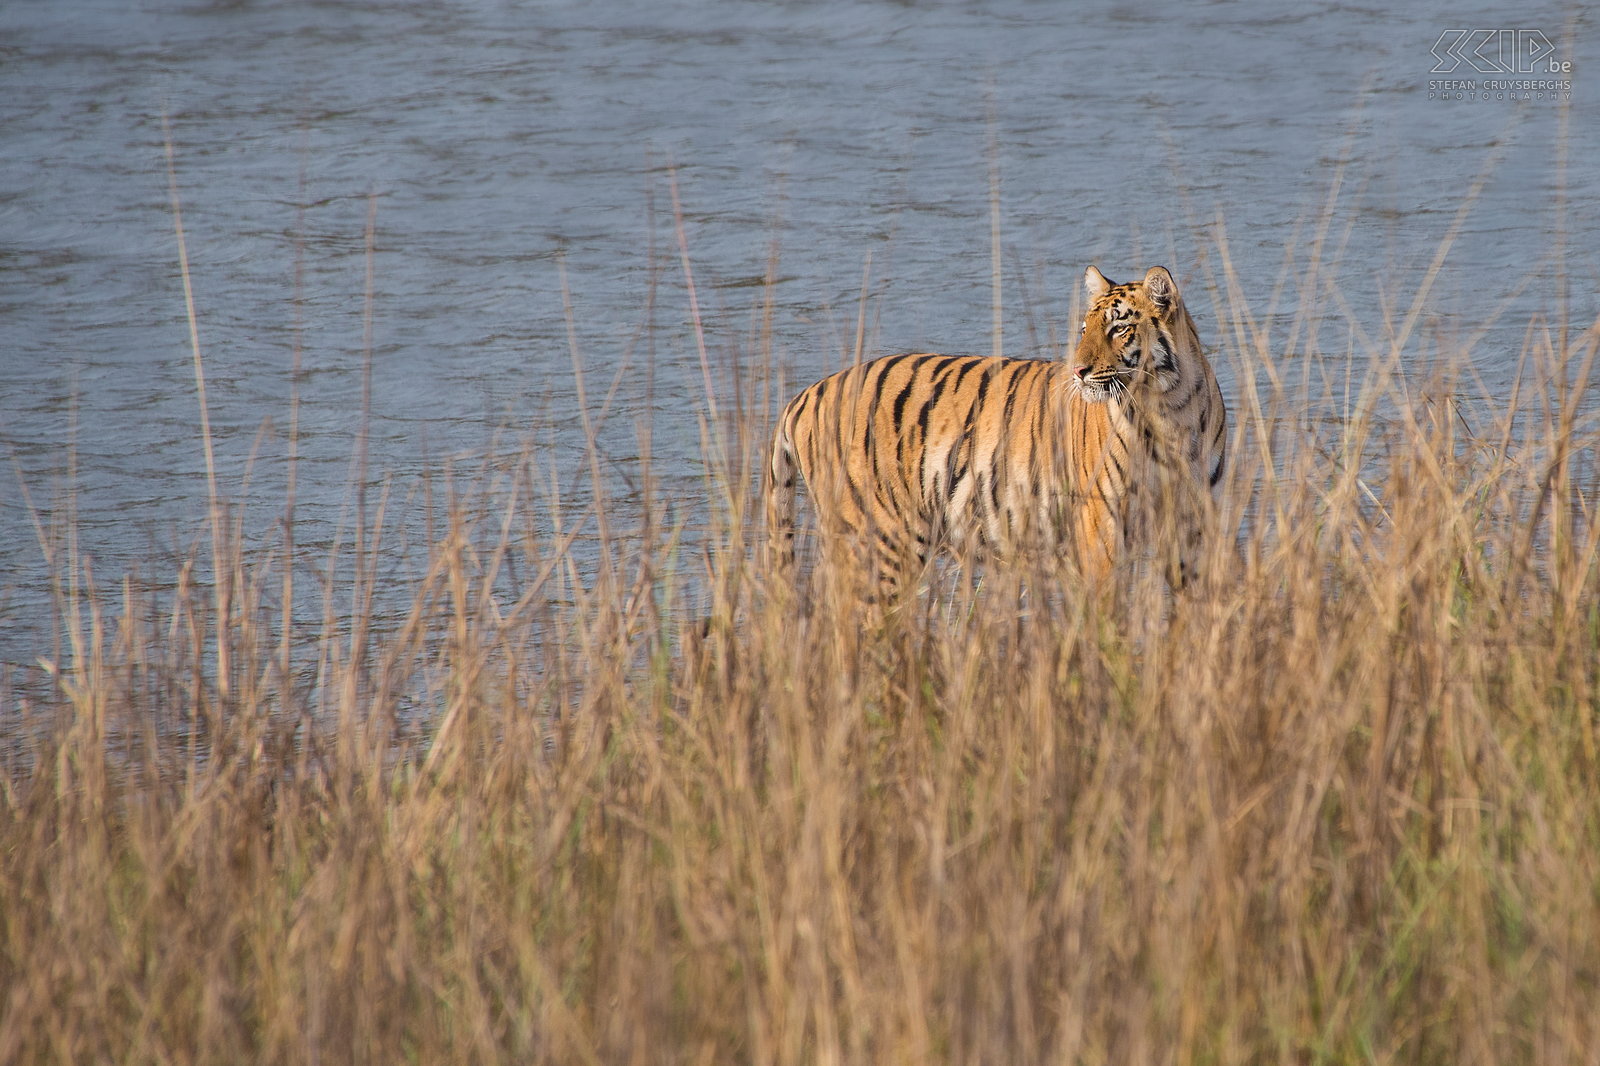 Tadoba - Tijgerin Tadoba Andhari Tiger Reserve (TATR) is een nationaal park in de staat Maharashtra. Het is nog een redelijk onbekend park maar wel een van de best plaatsen ter wereld om Bengaalse tijgers in het wild te kunnen spotten. Tijdens onze eerste game drive spotten we een tijgerin in het hoge gras bij het Telia meer. Stefan Cruysberghs